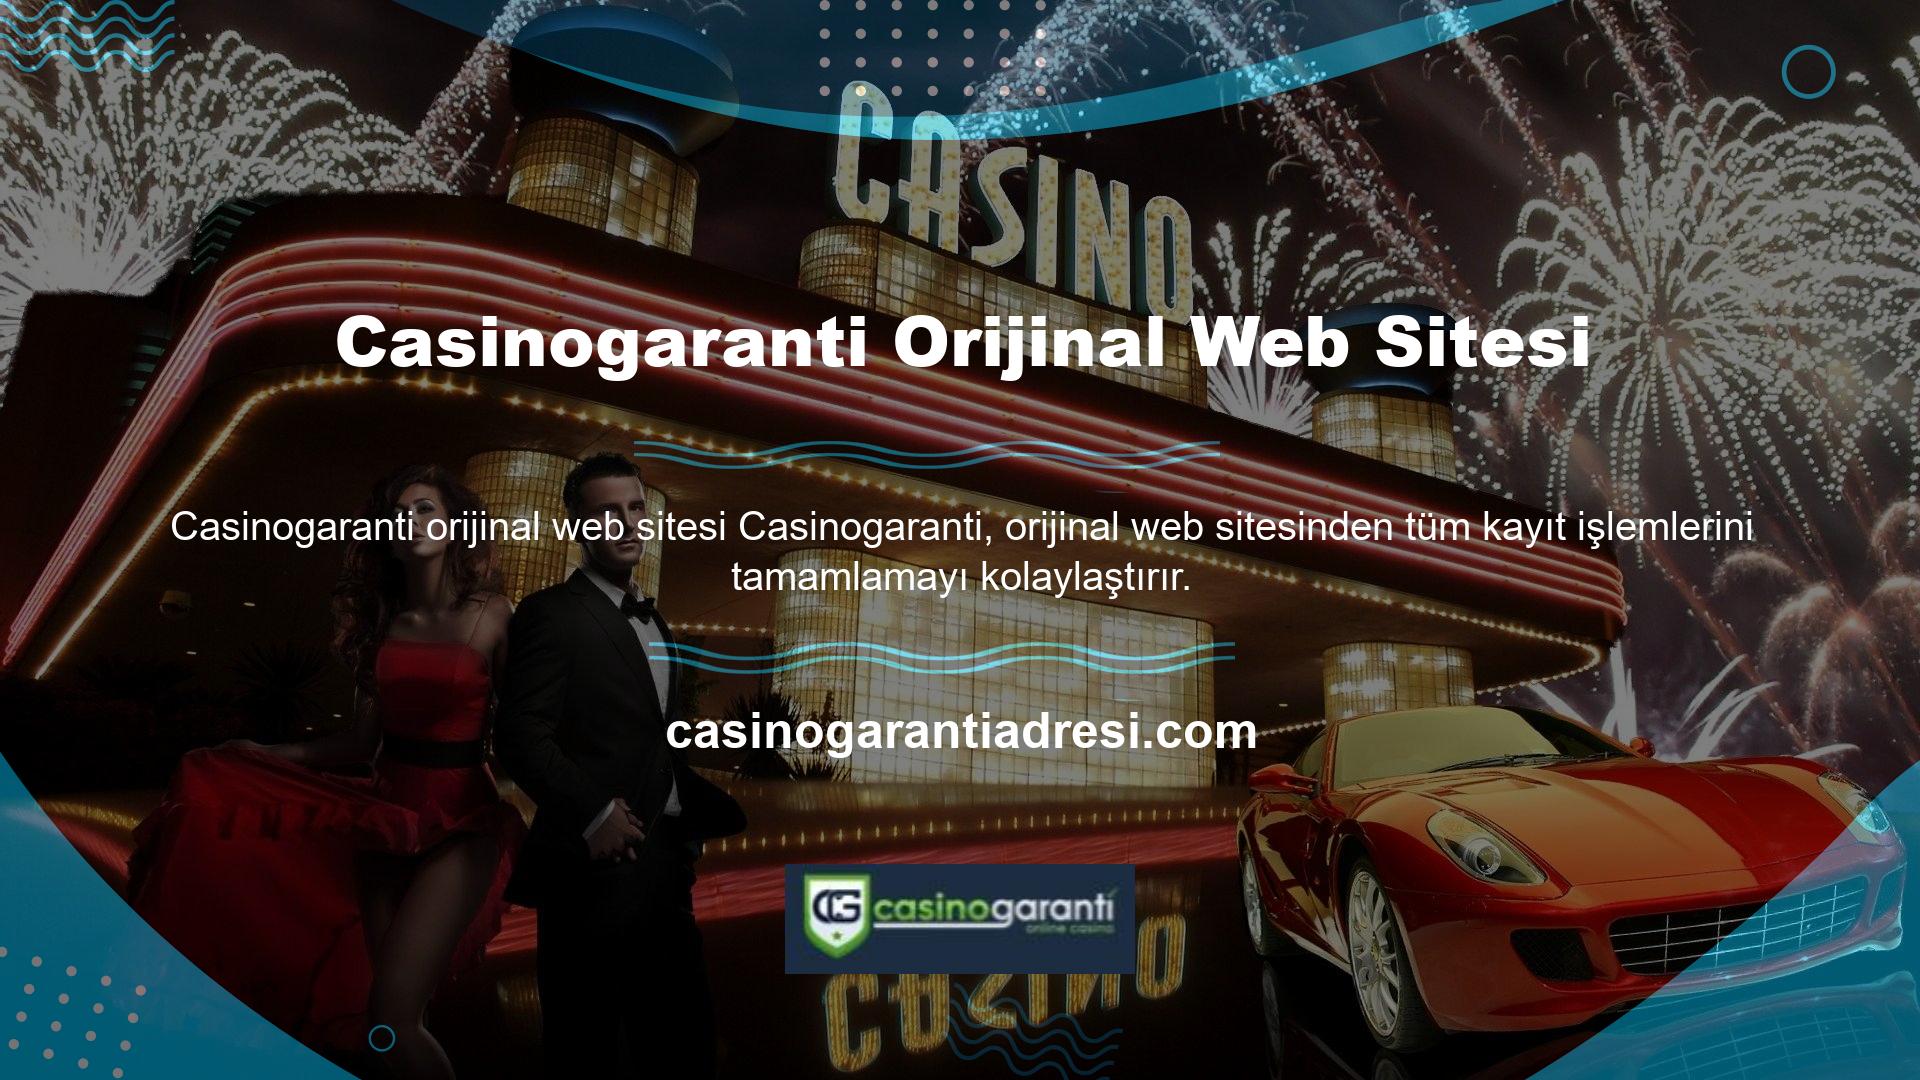 Casinogaranti, tüm üyelerin güvenliğini ve gizliliğini garanti eder